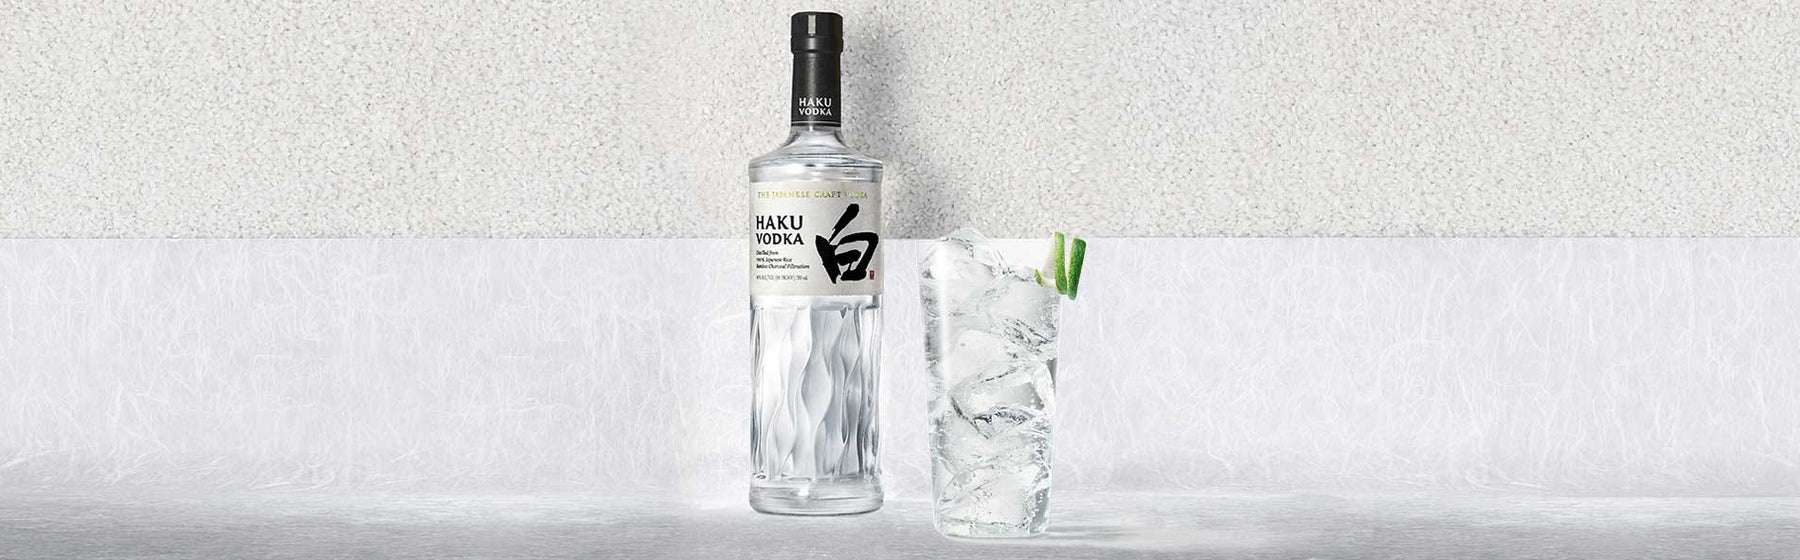 Haku HiBall Cocktail